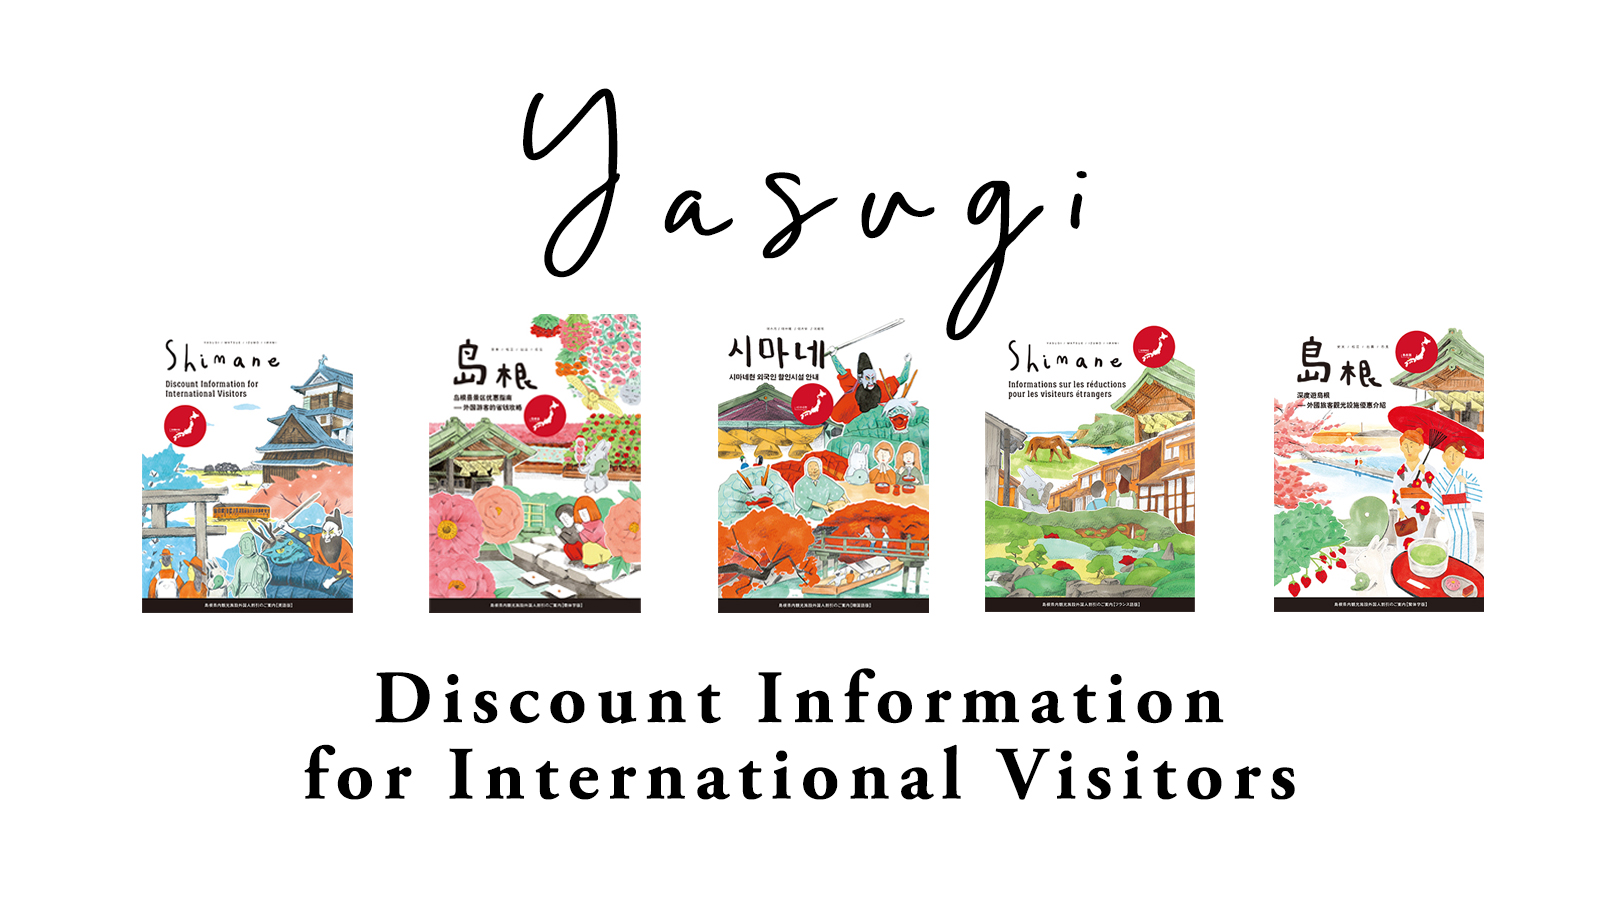 Shimane Discount Information Yasugi